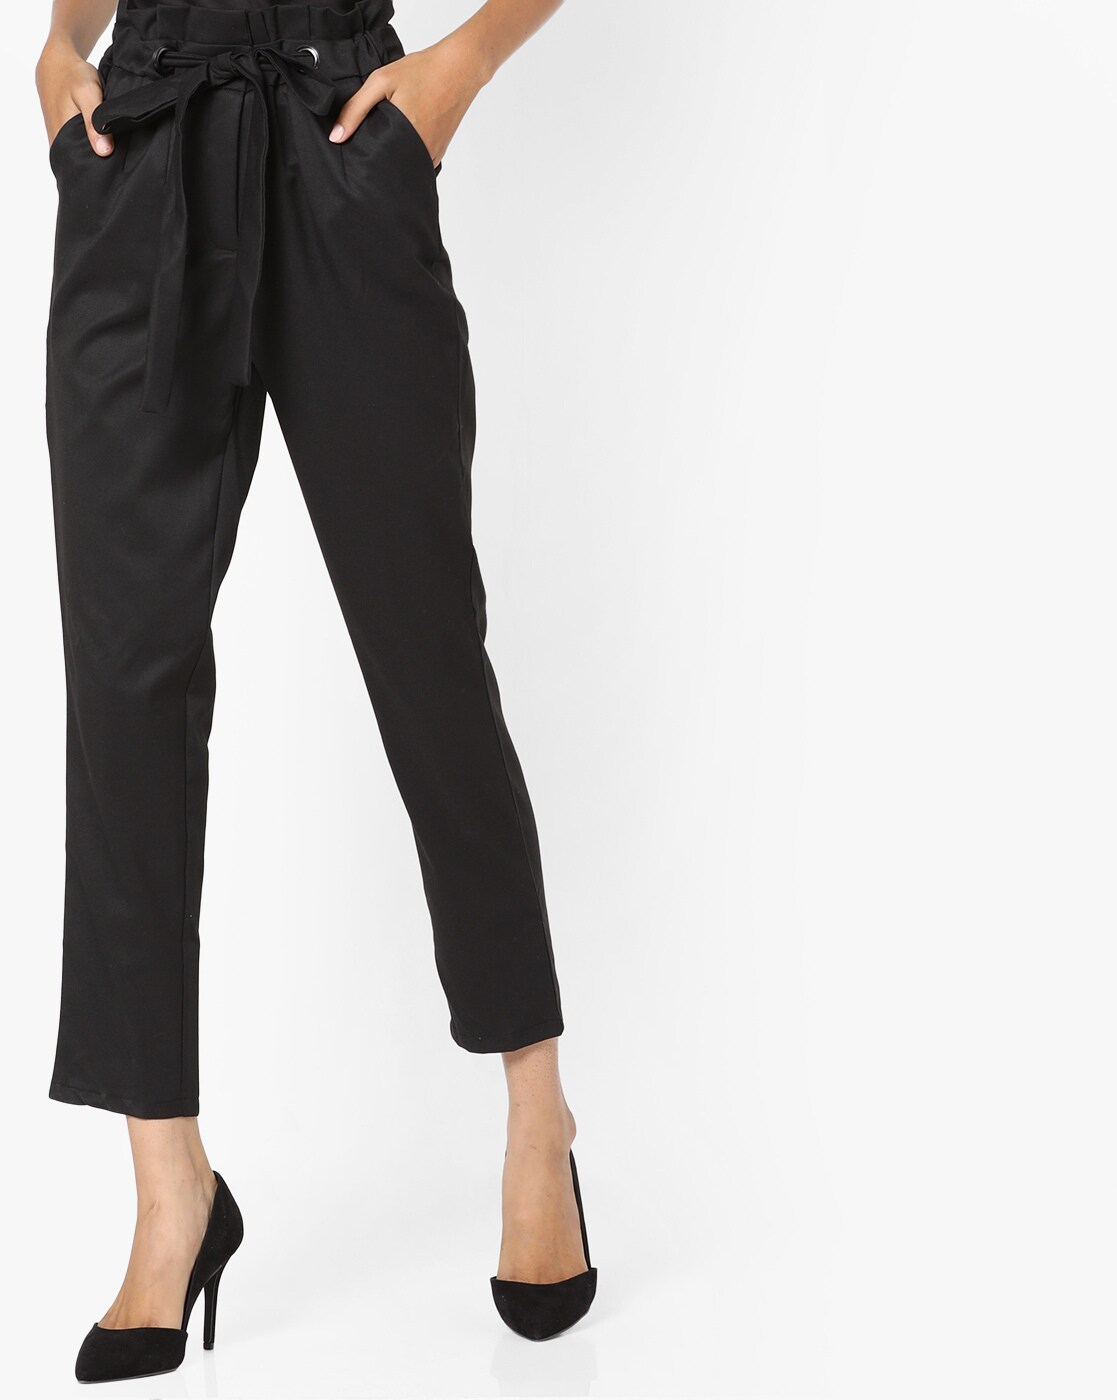 Buy Black Trousers & Pants for Women by Encrustd Online | Ajio.com